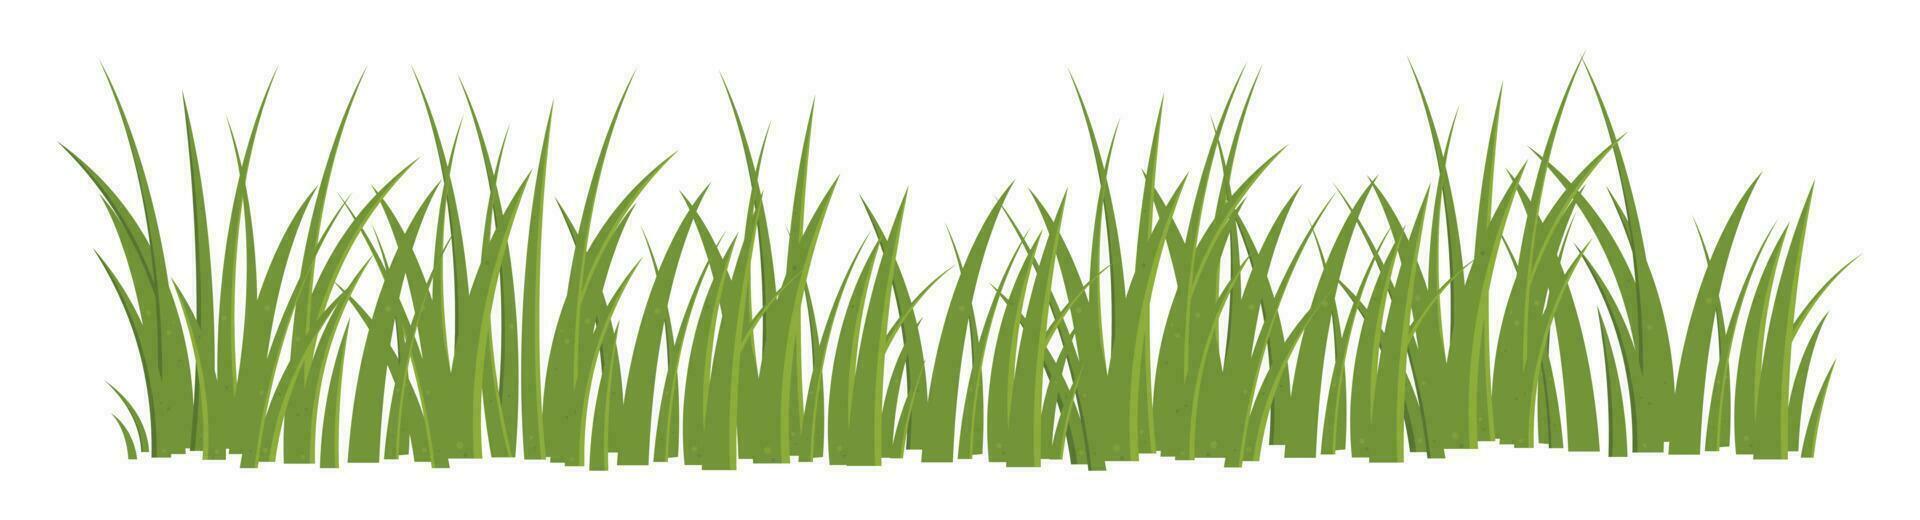 dessin animé herbe feuilles collection vecteur illustration isolé sur blanc